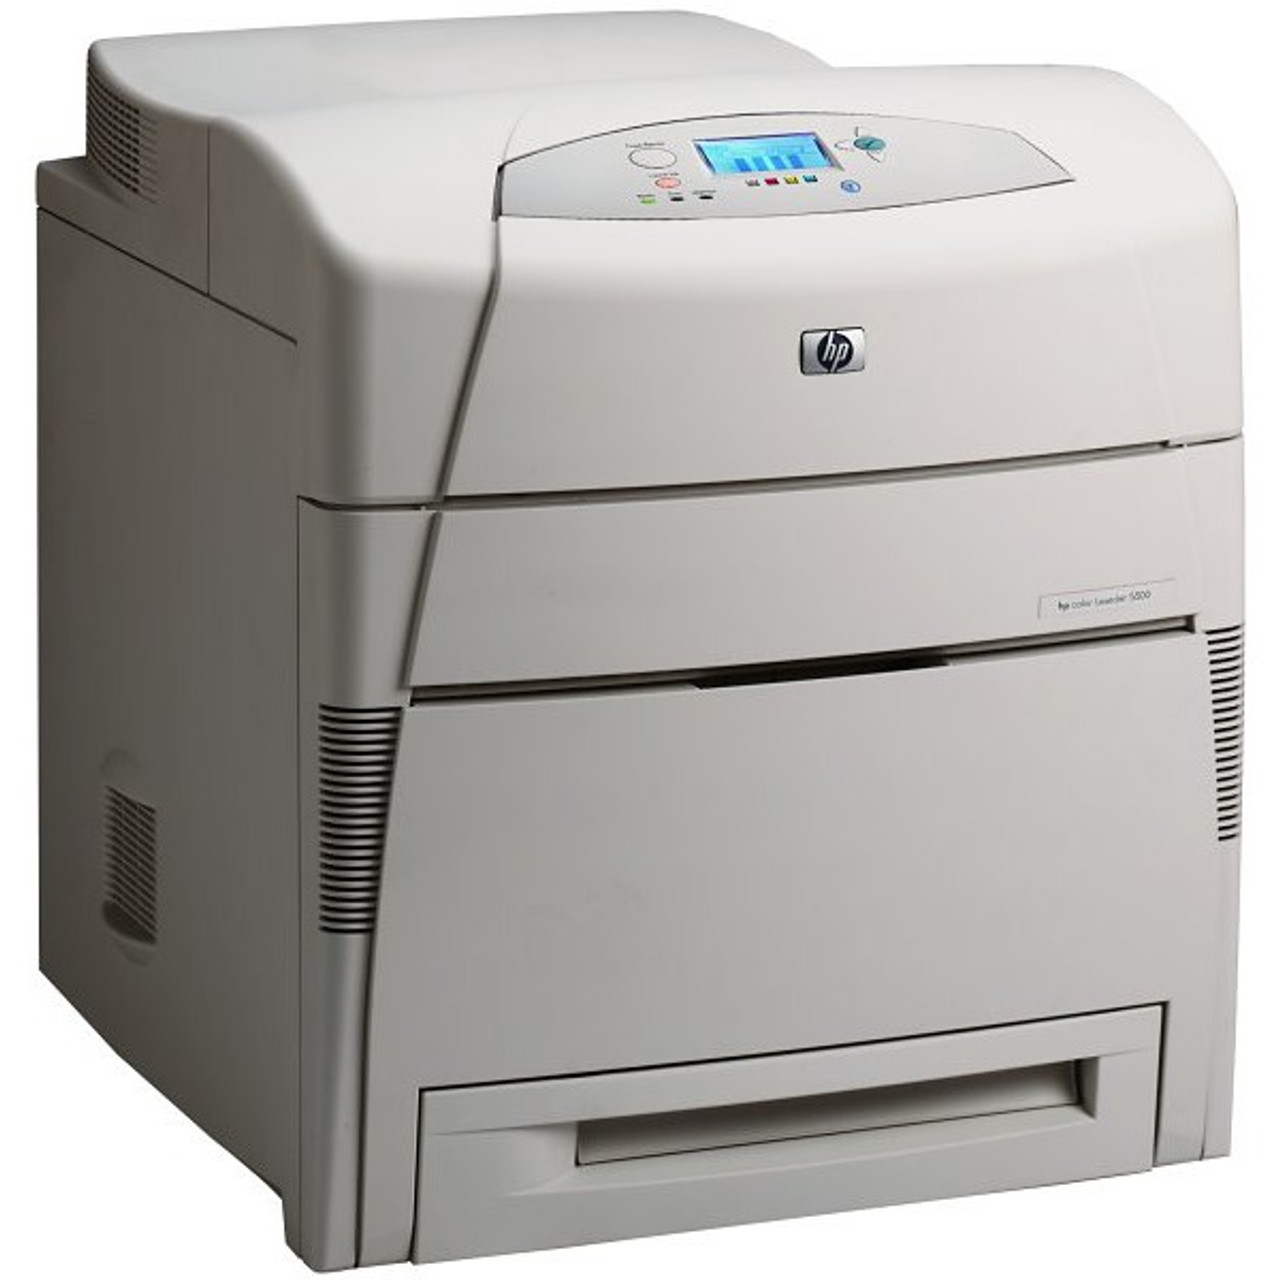 HP Color LaserJet 5550n - Q3714AR#ABA  - HP Laser Printer for sale